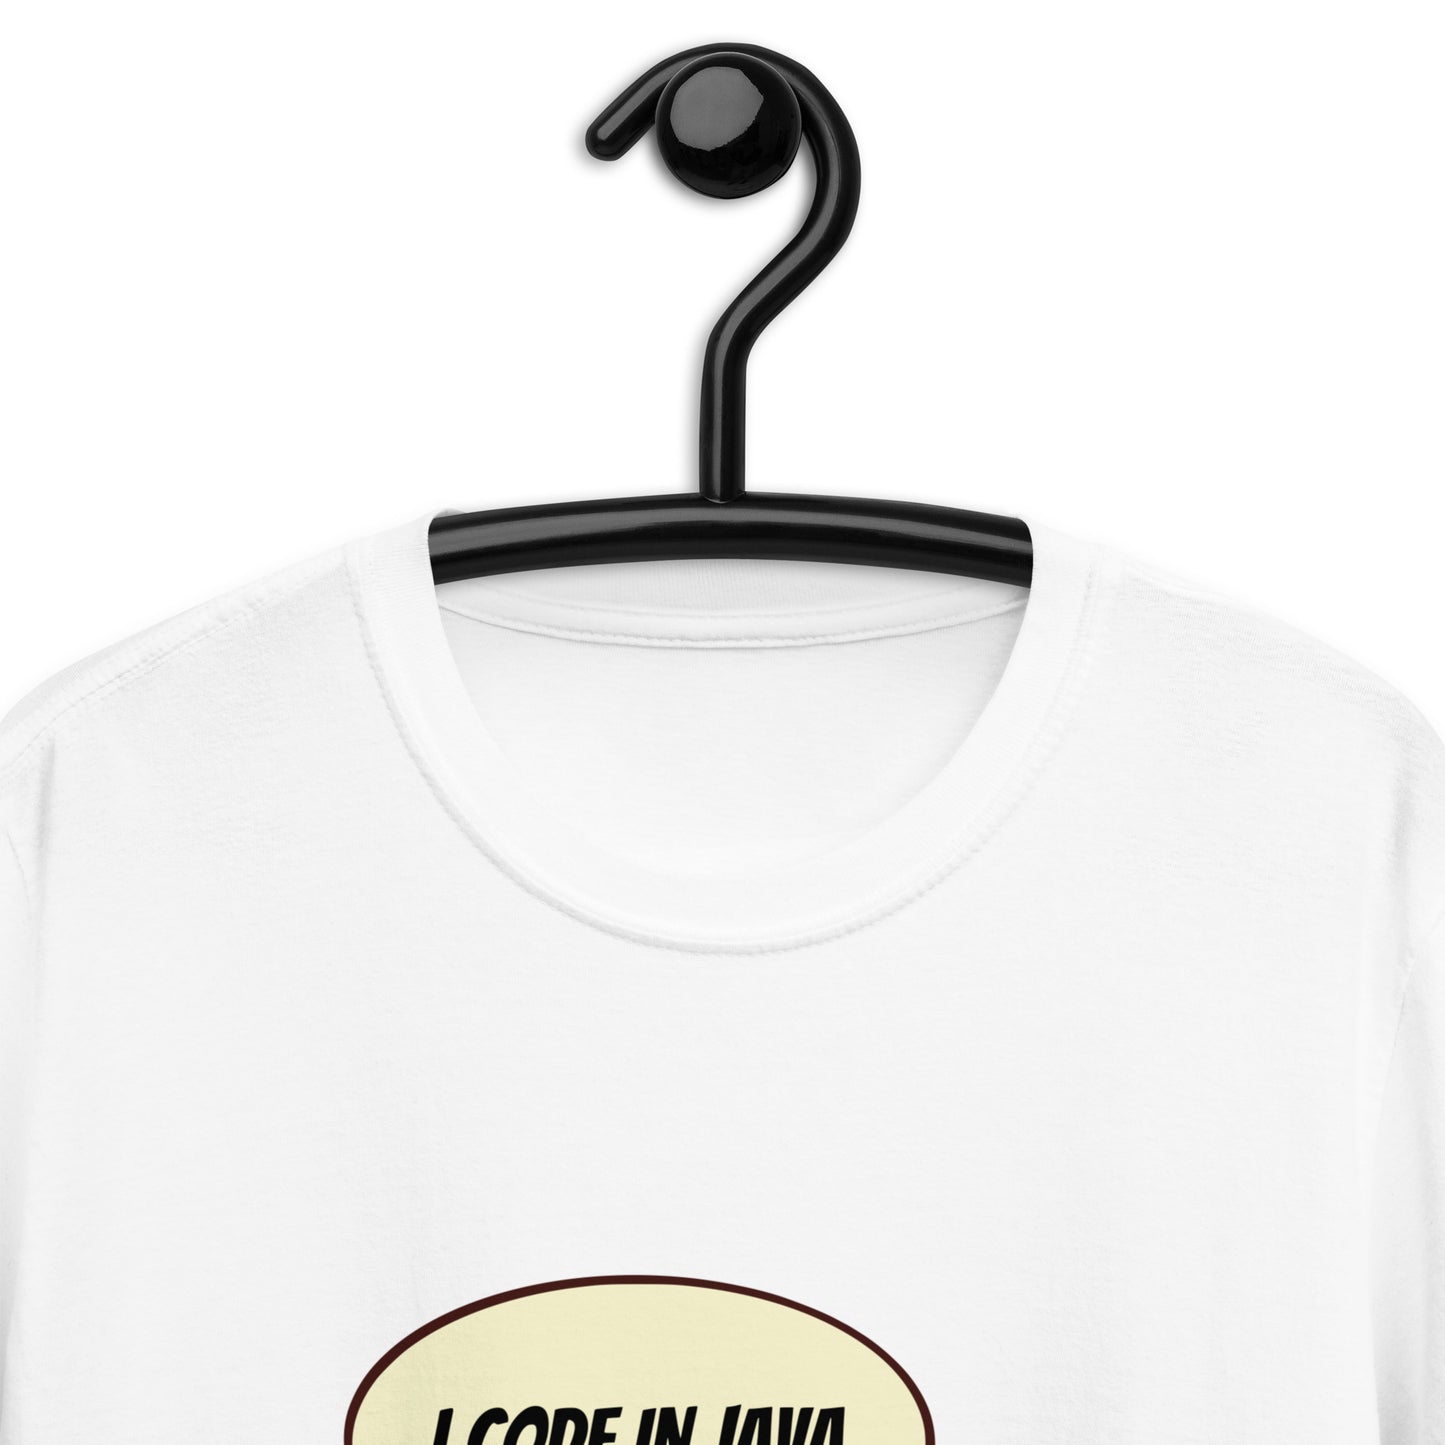 Java t-shirt - Software developer